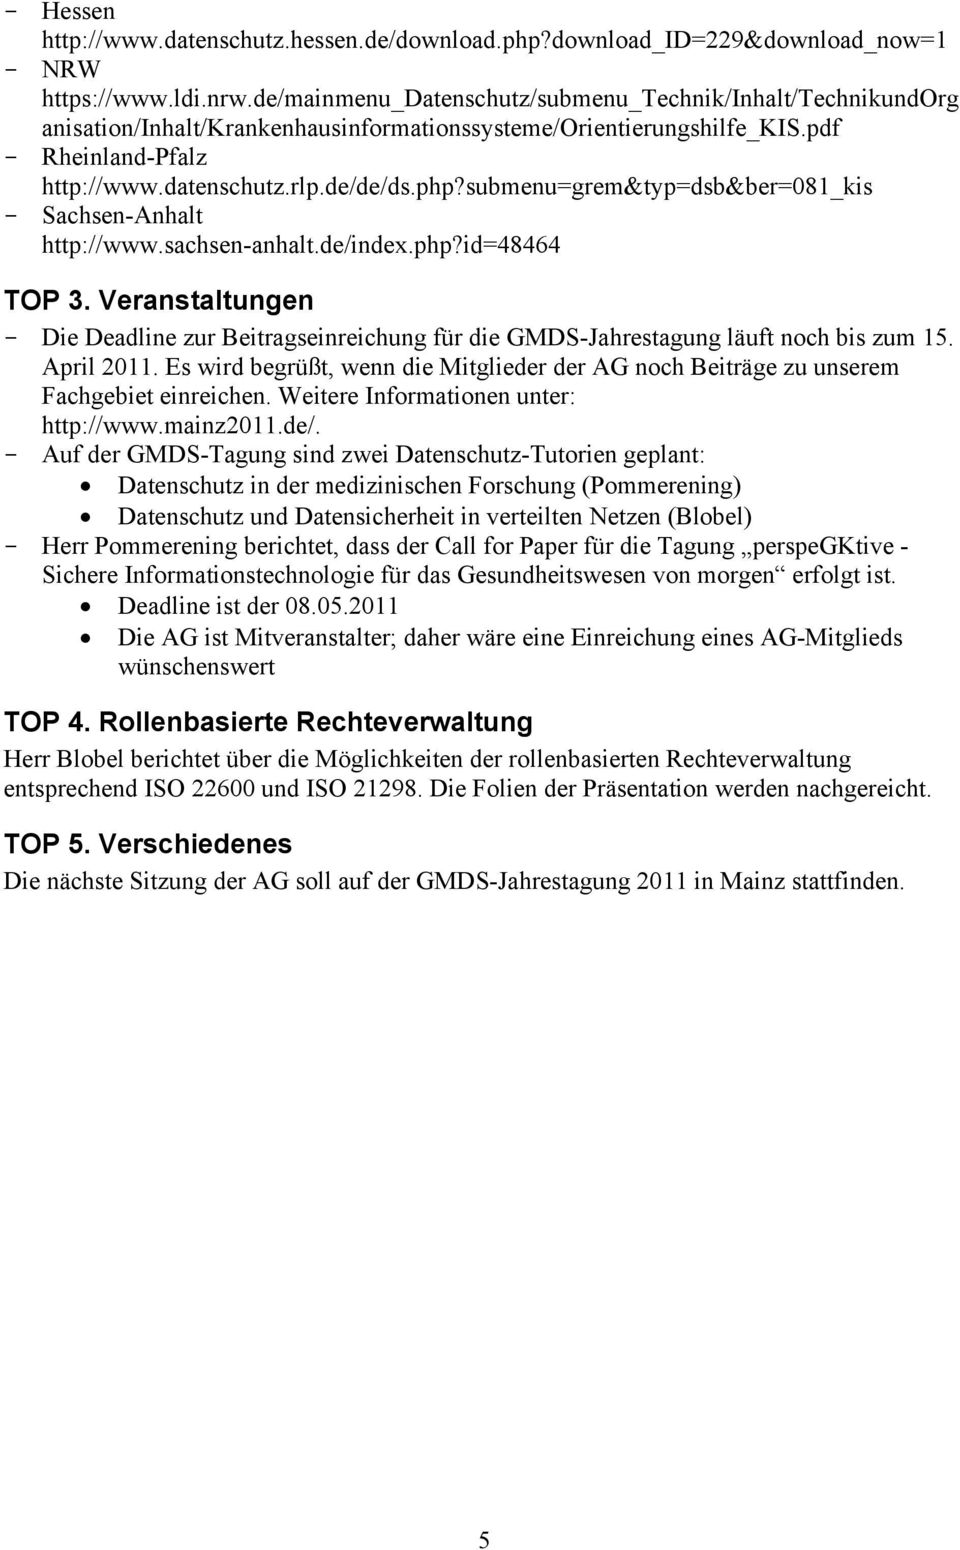 submenu=grem&typ=dsb&ber=081_kis - Sachsen-Anhalt http://www.sachsen-anhalt.de/index.php?id=48464 TOP 3.